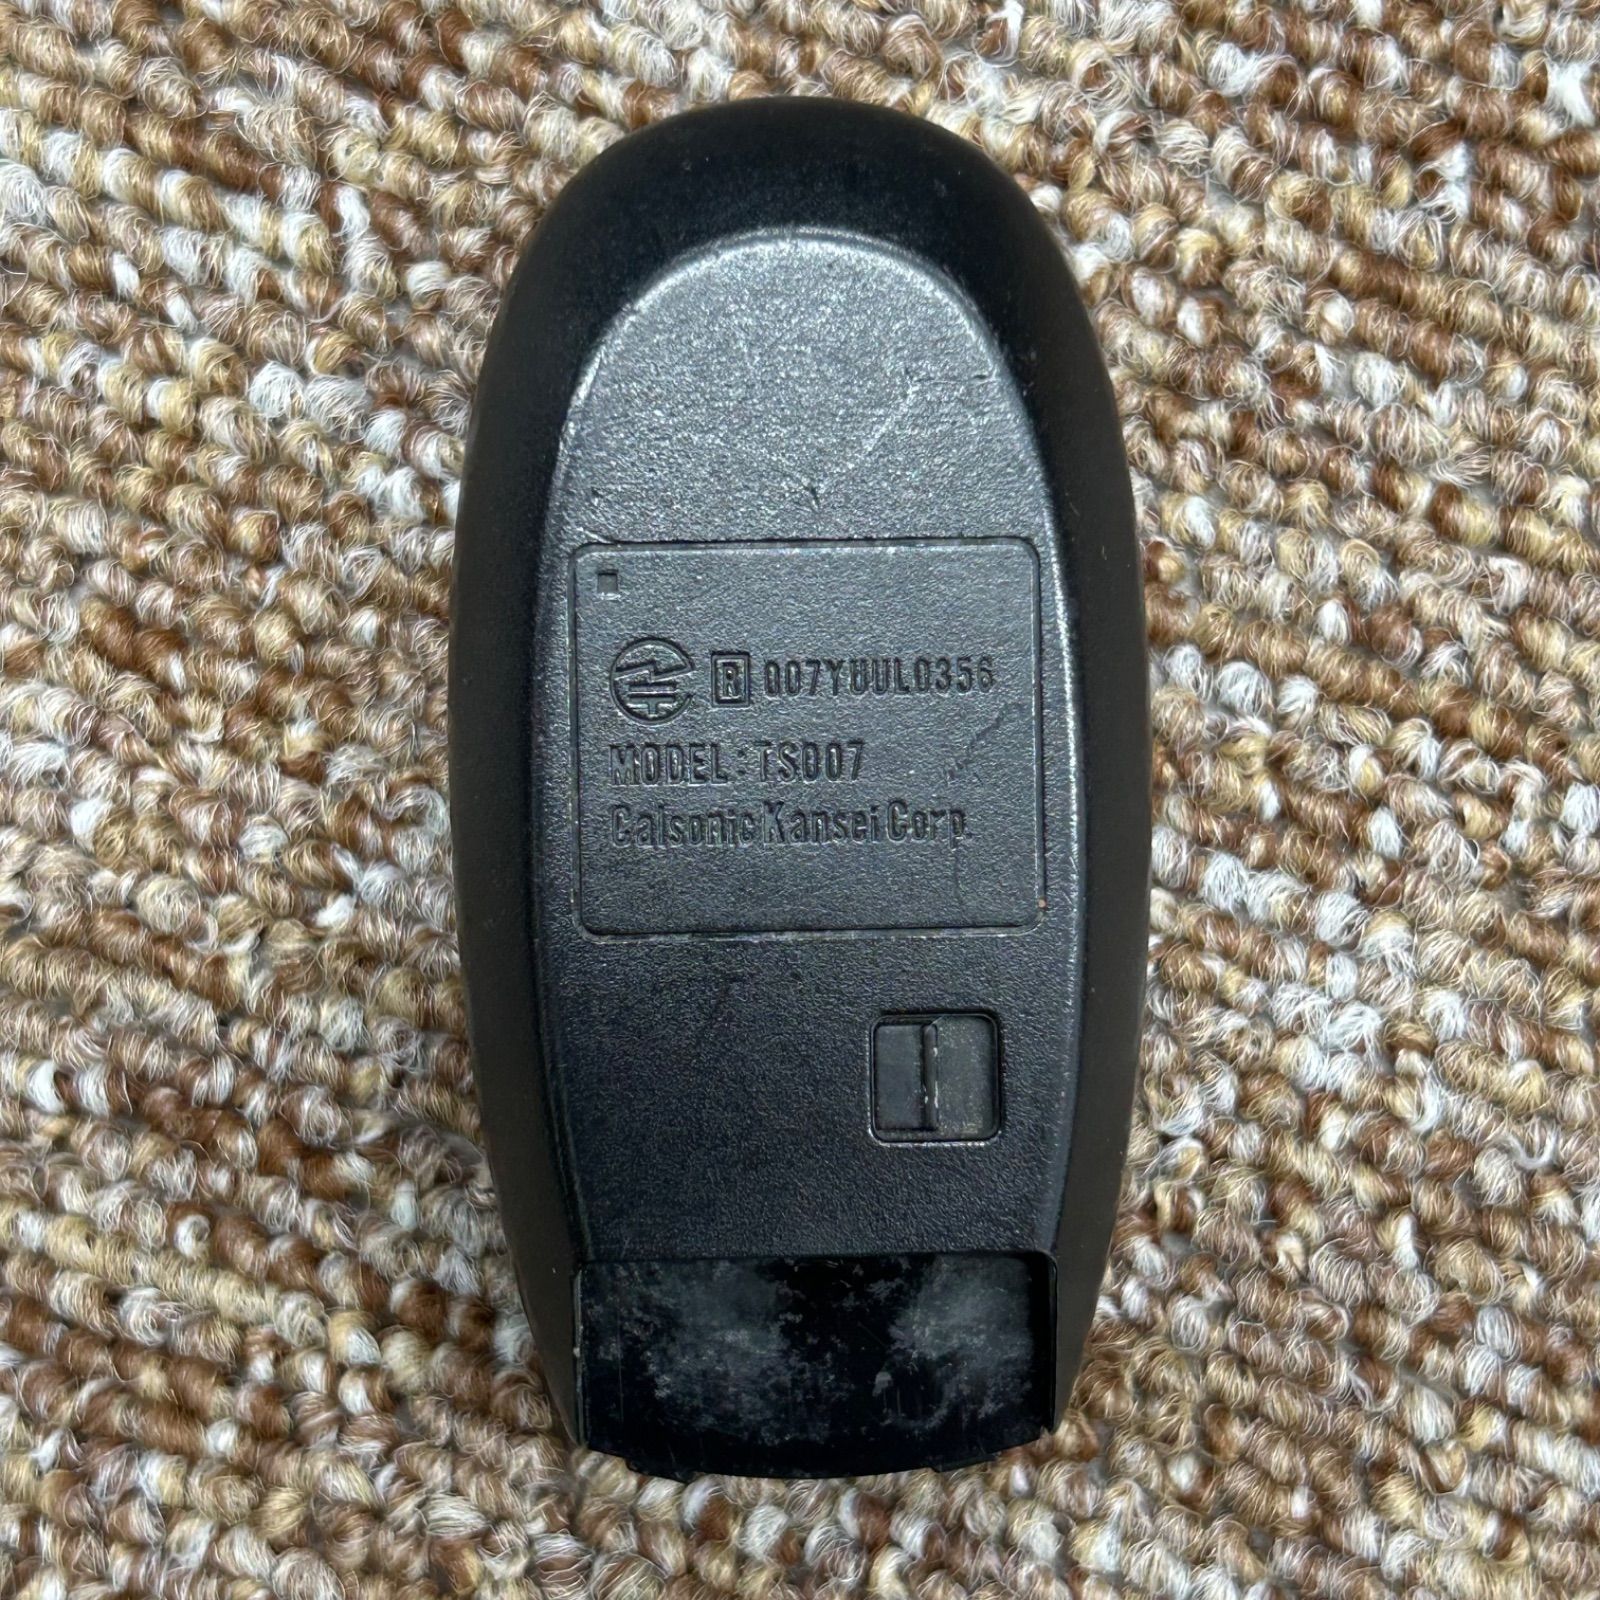 スズキ 純正 スマートキー 2ボタン スイフト バレーノ エスクード SX4 刻印007YUUL0356/TS007 - メルカリ